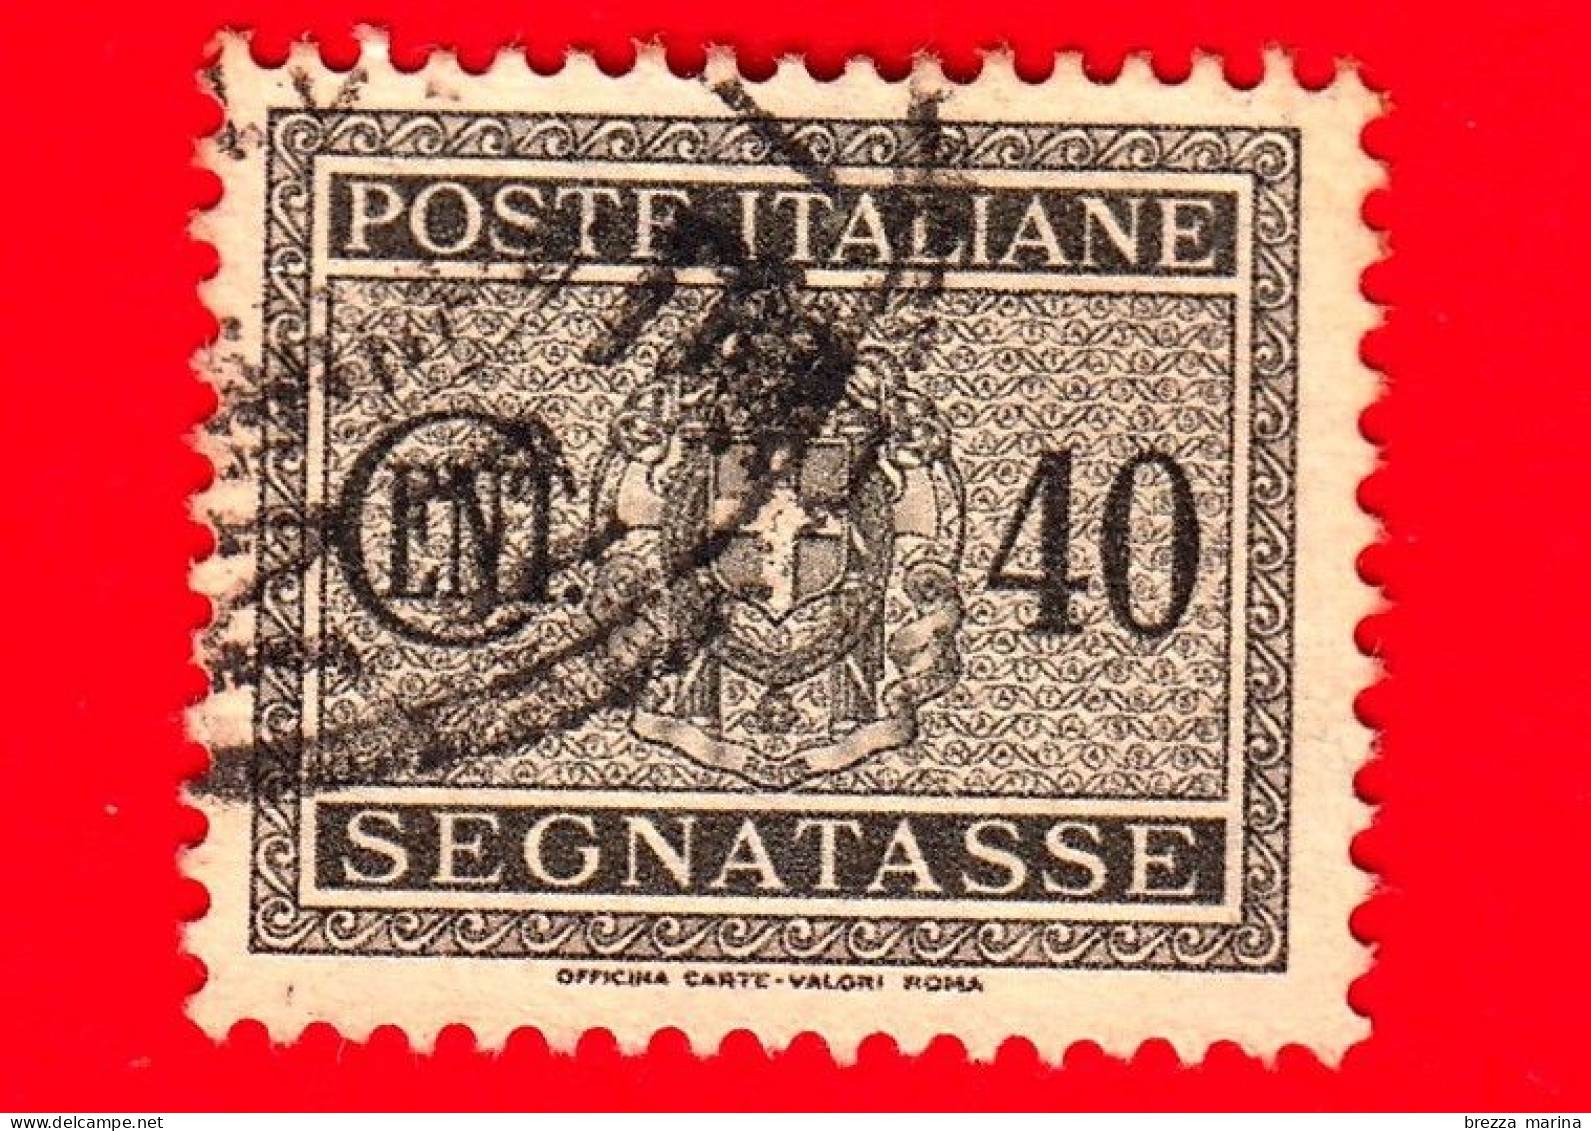 ITALIA - Usato - 1934 - Segnatasse - Fascio Littorio - 40 C - Postage Due